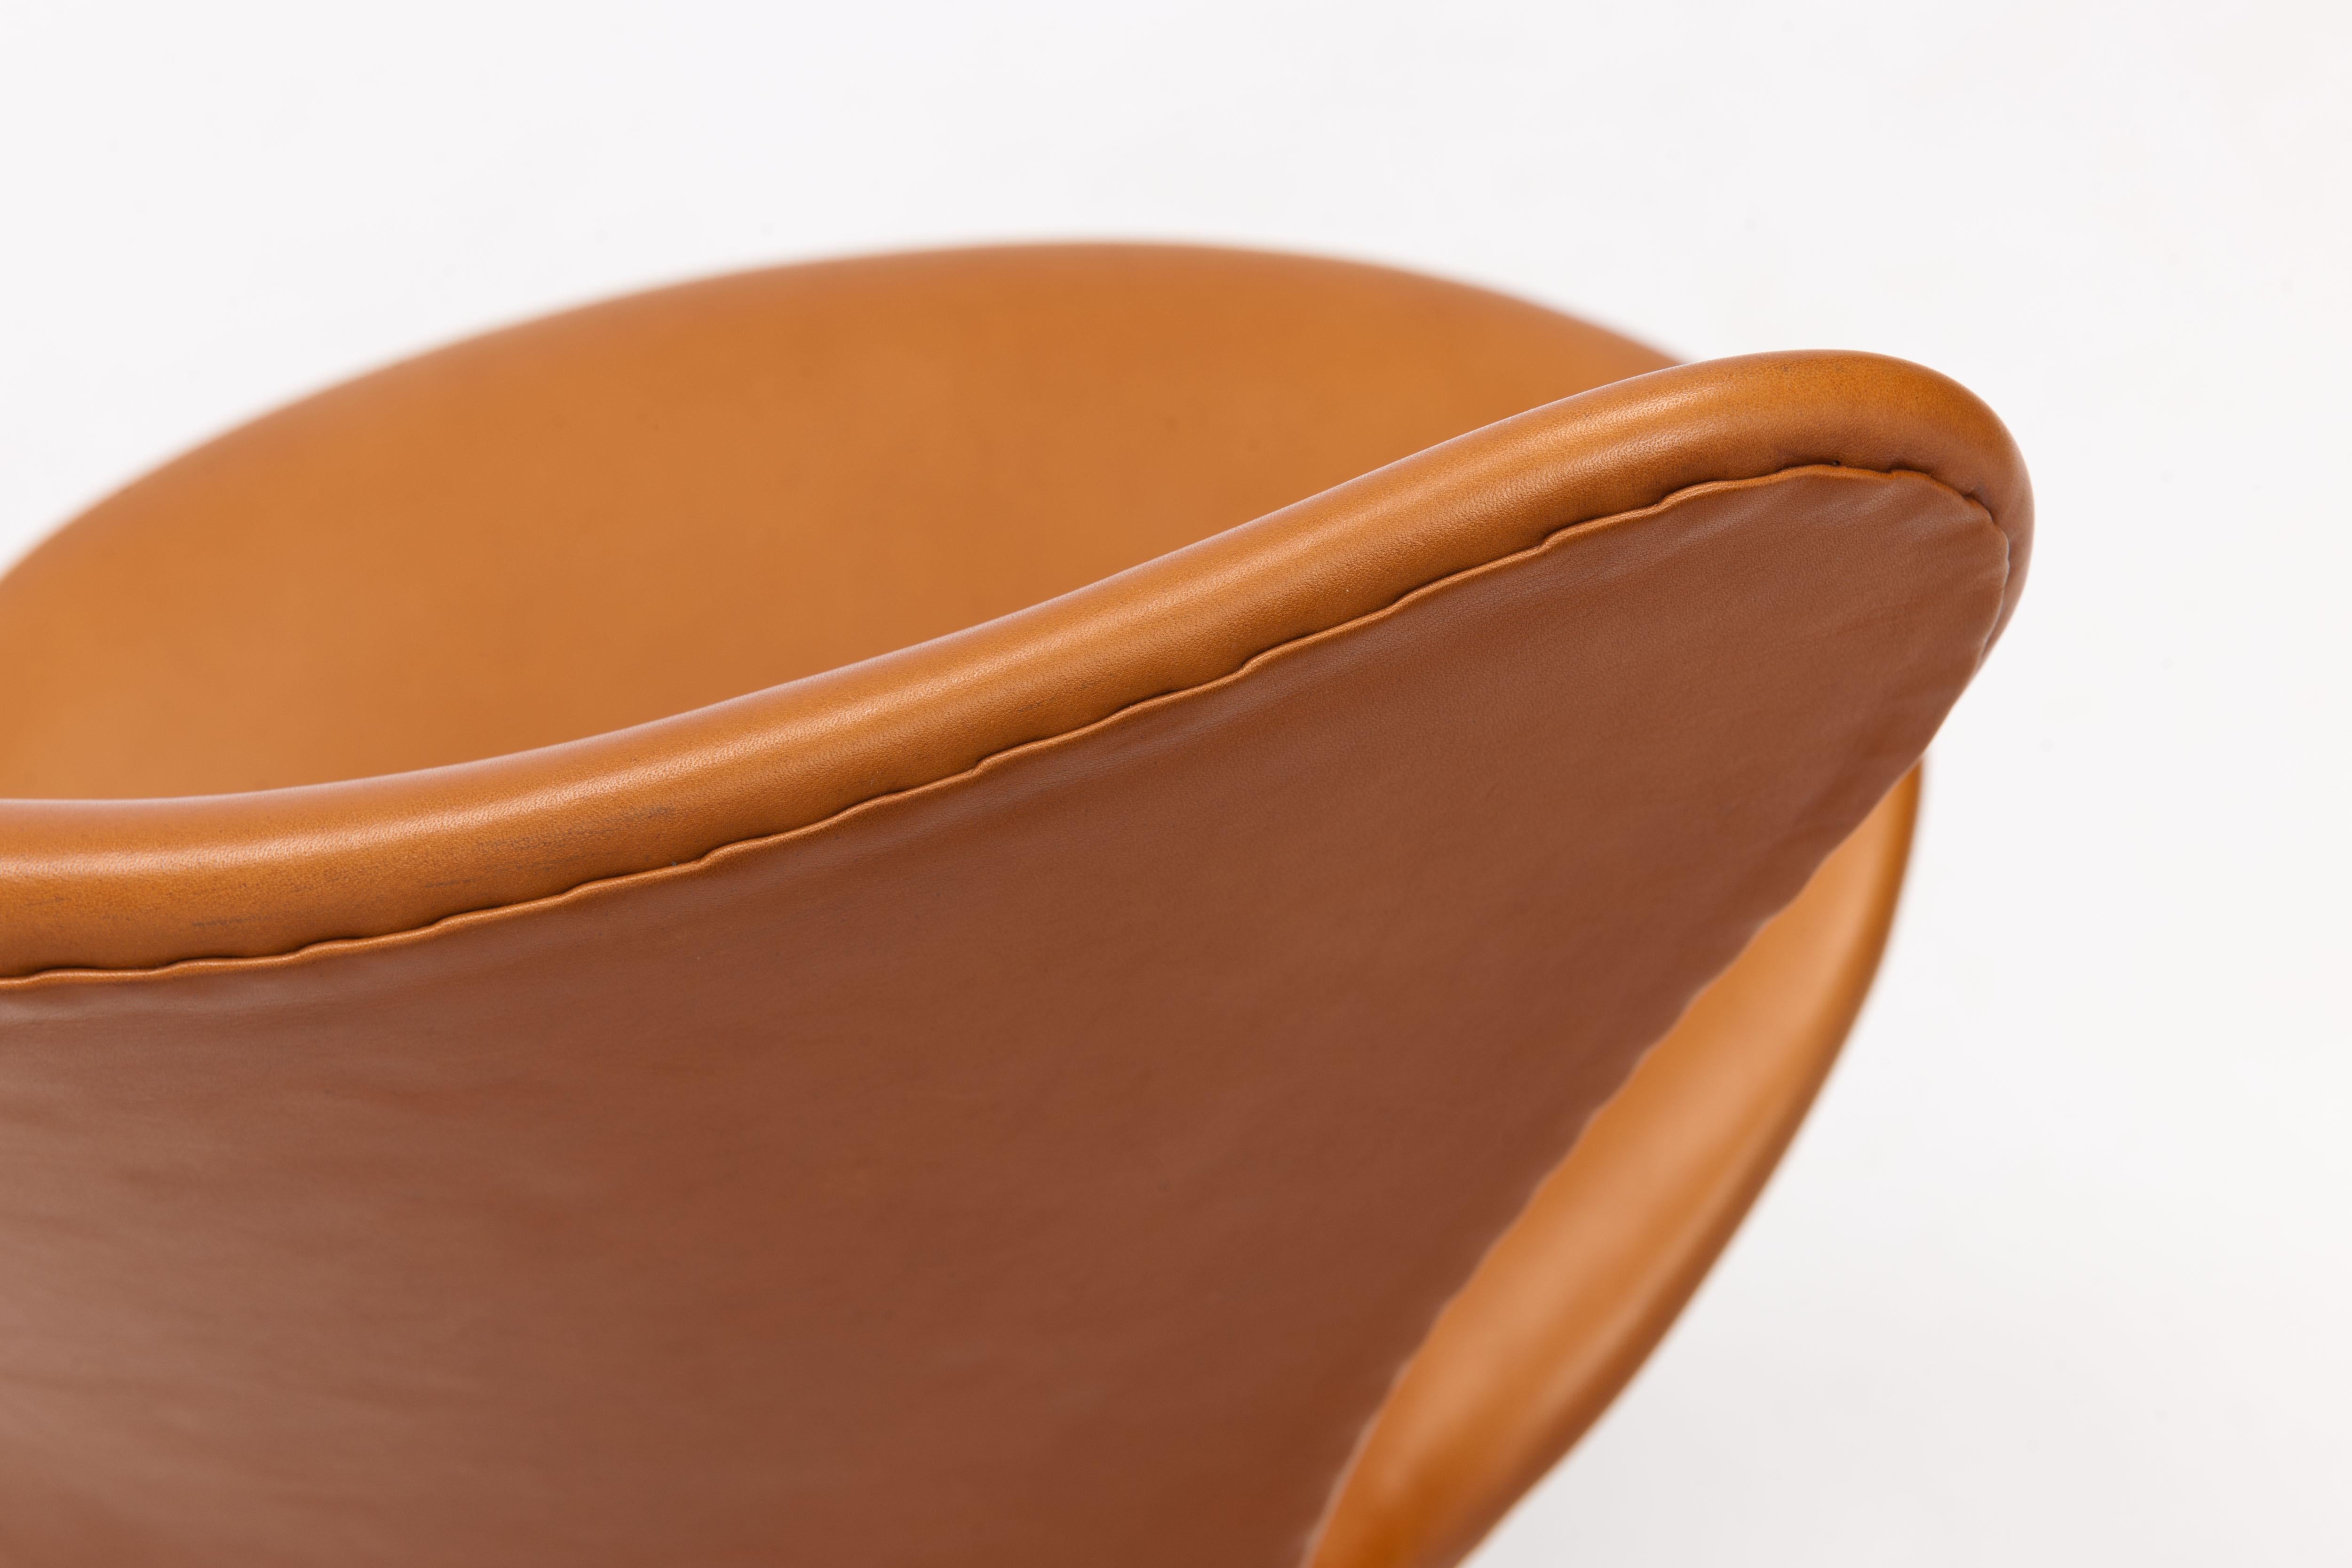 Scandinavian Modern Cognac Arne Jacobsen 3117 Desk Swivel Chair by Fritz Hansen 